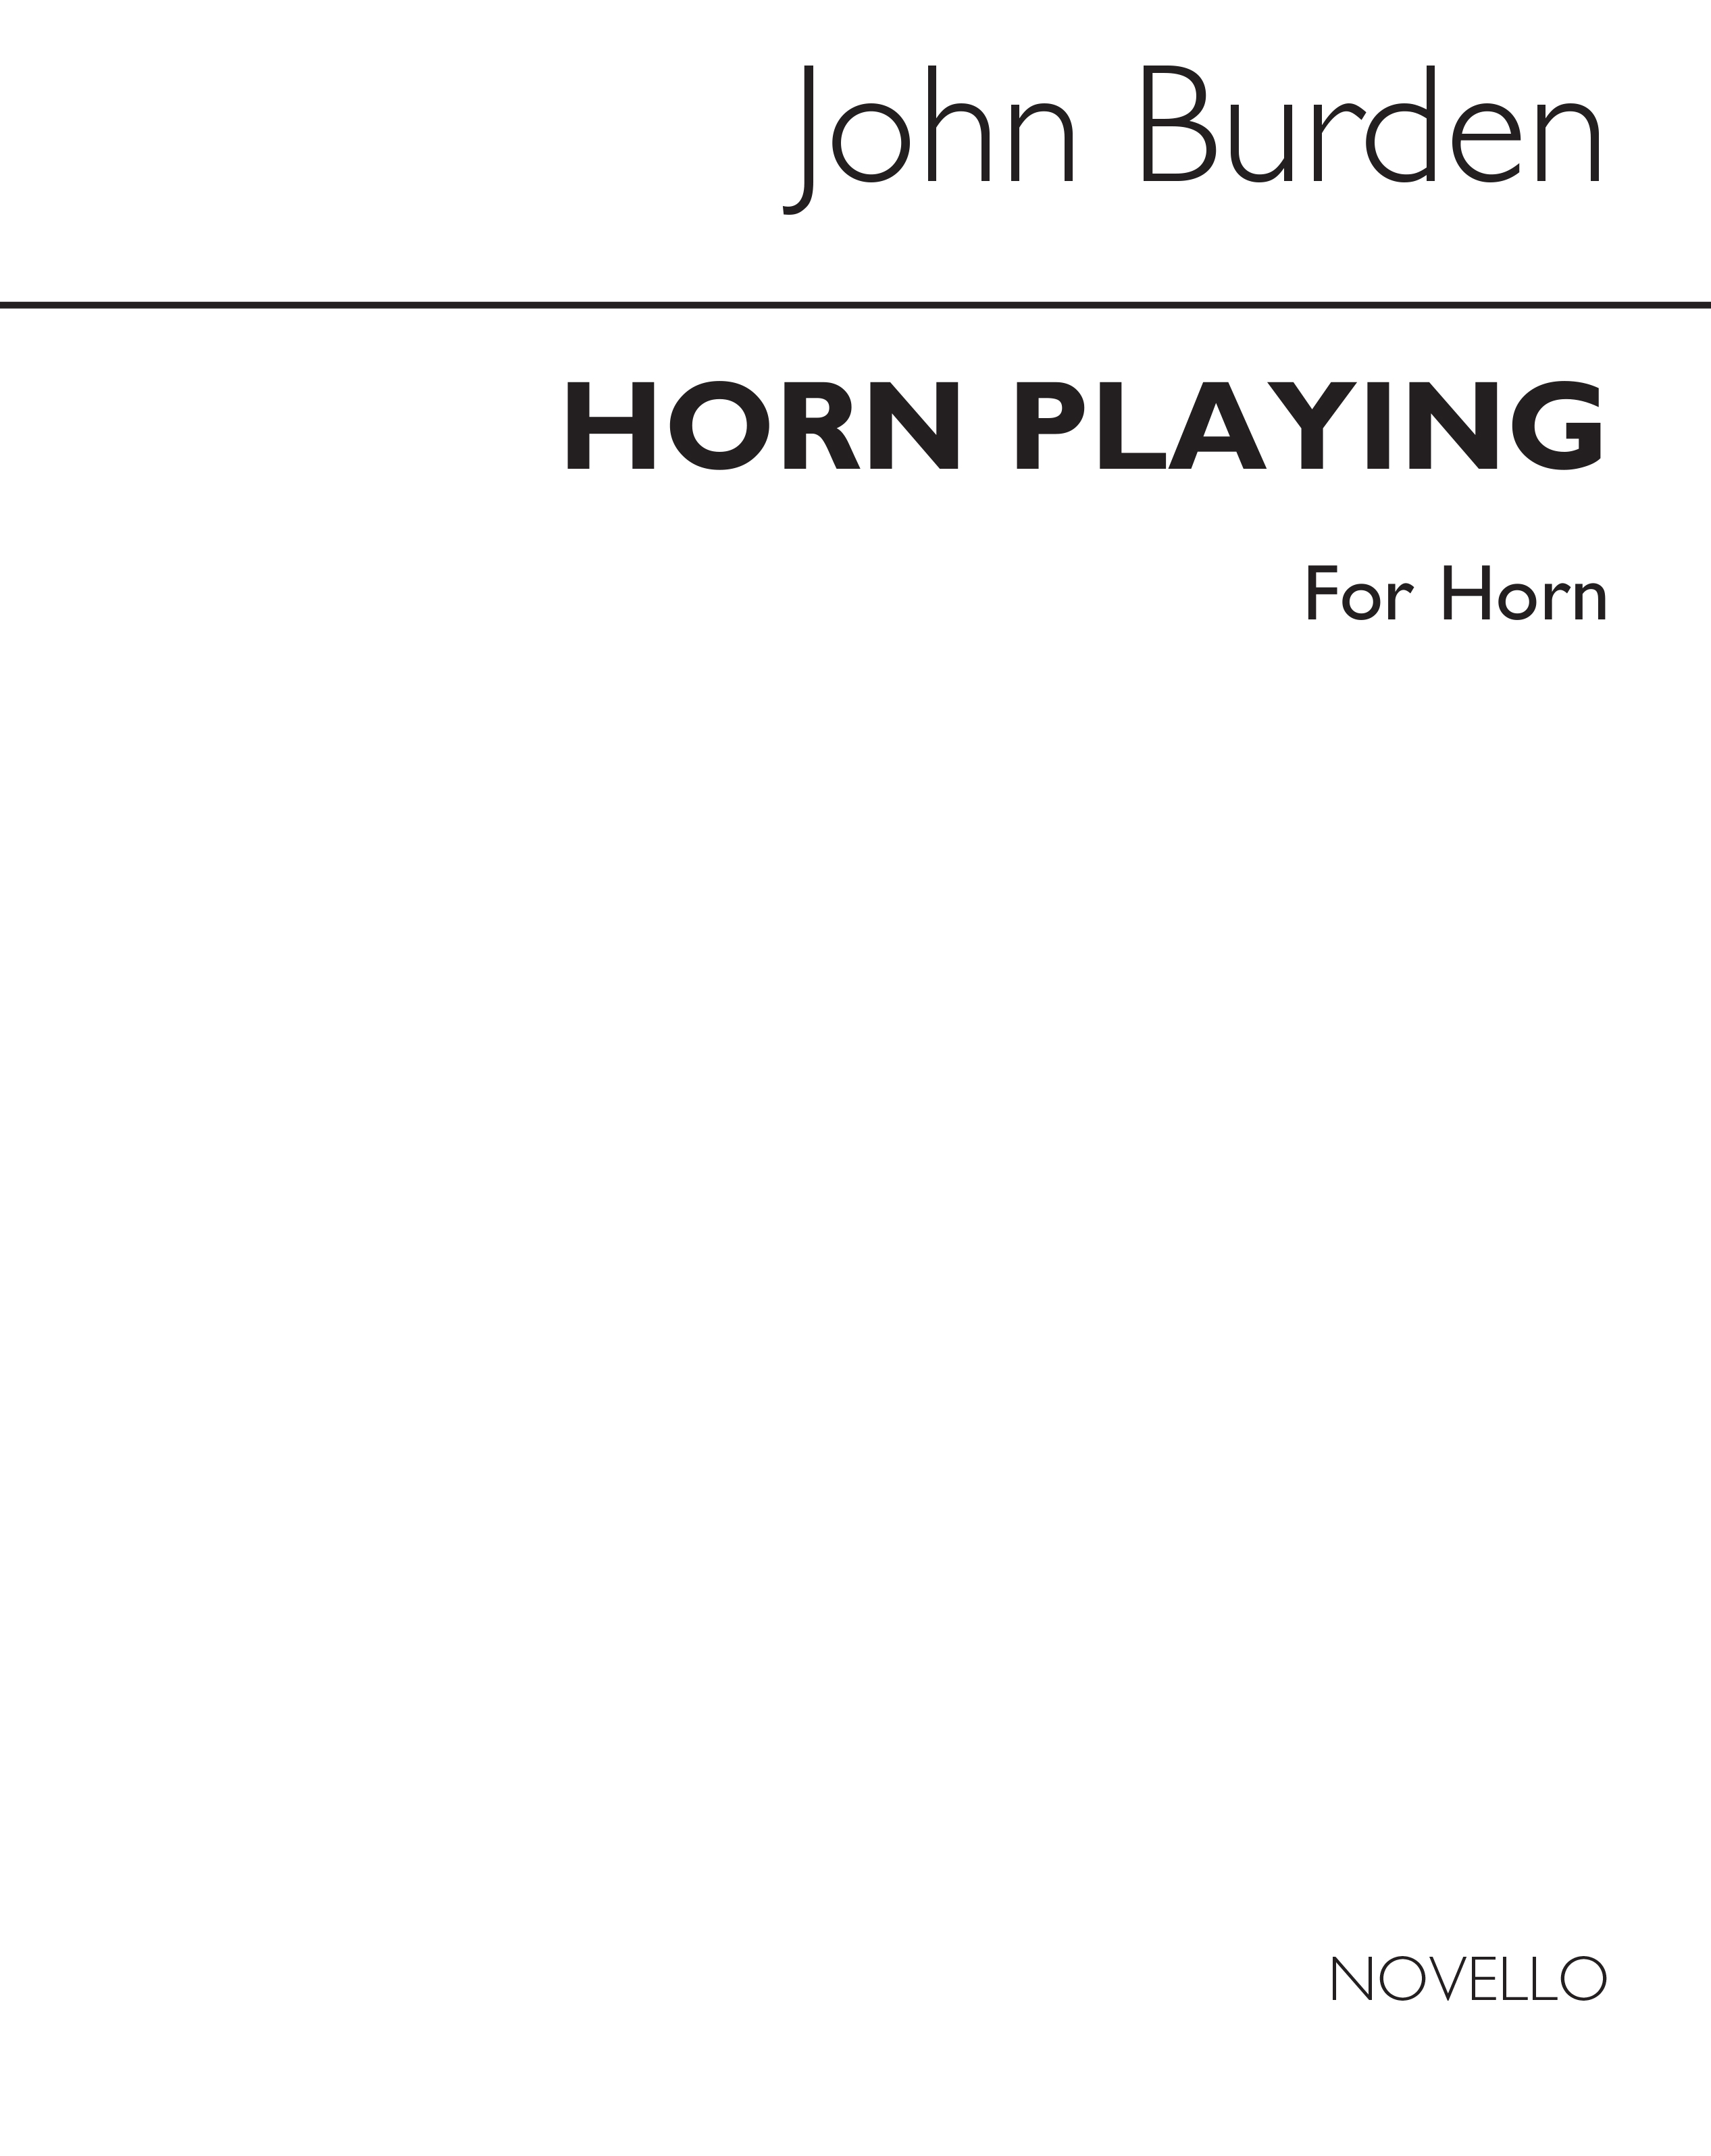 Burden: Horn Playing: A New Approach